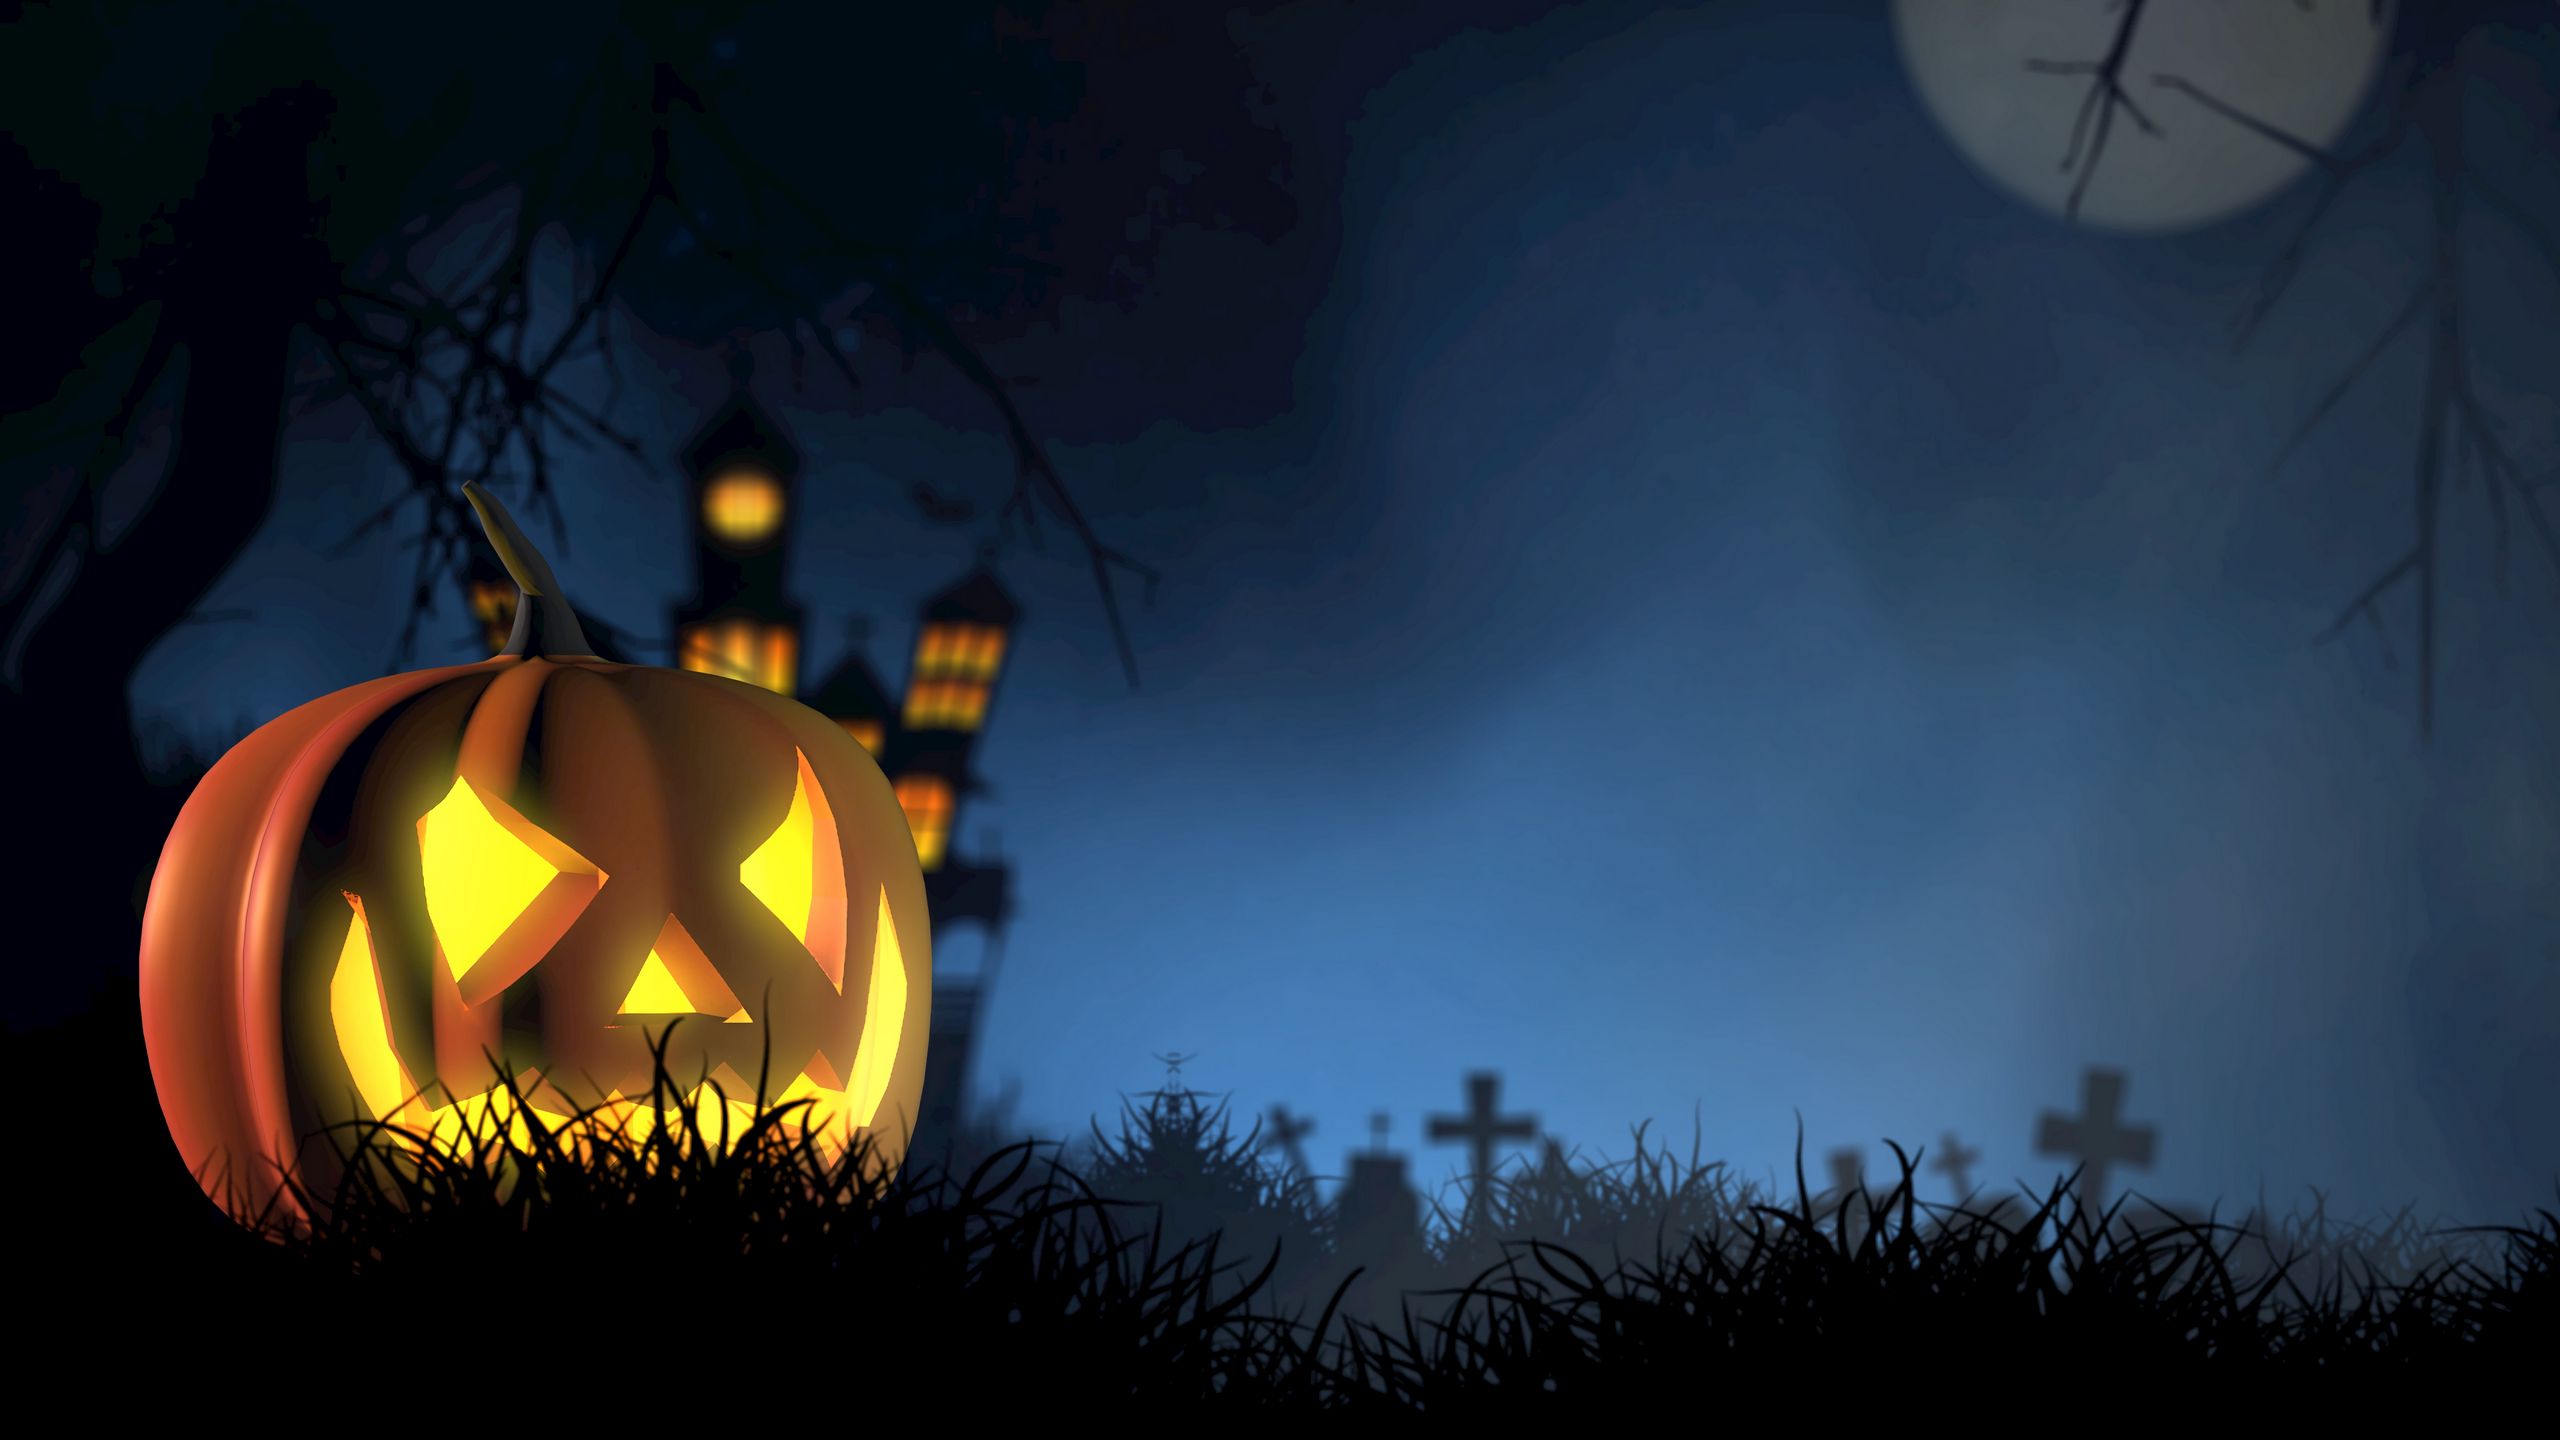 Download wallpaper 2560x1440 halloween, pumpkin, spooky, face, autumn widescreen 16:9 HD background